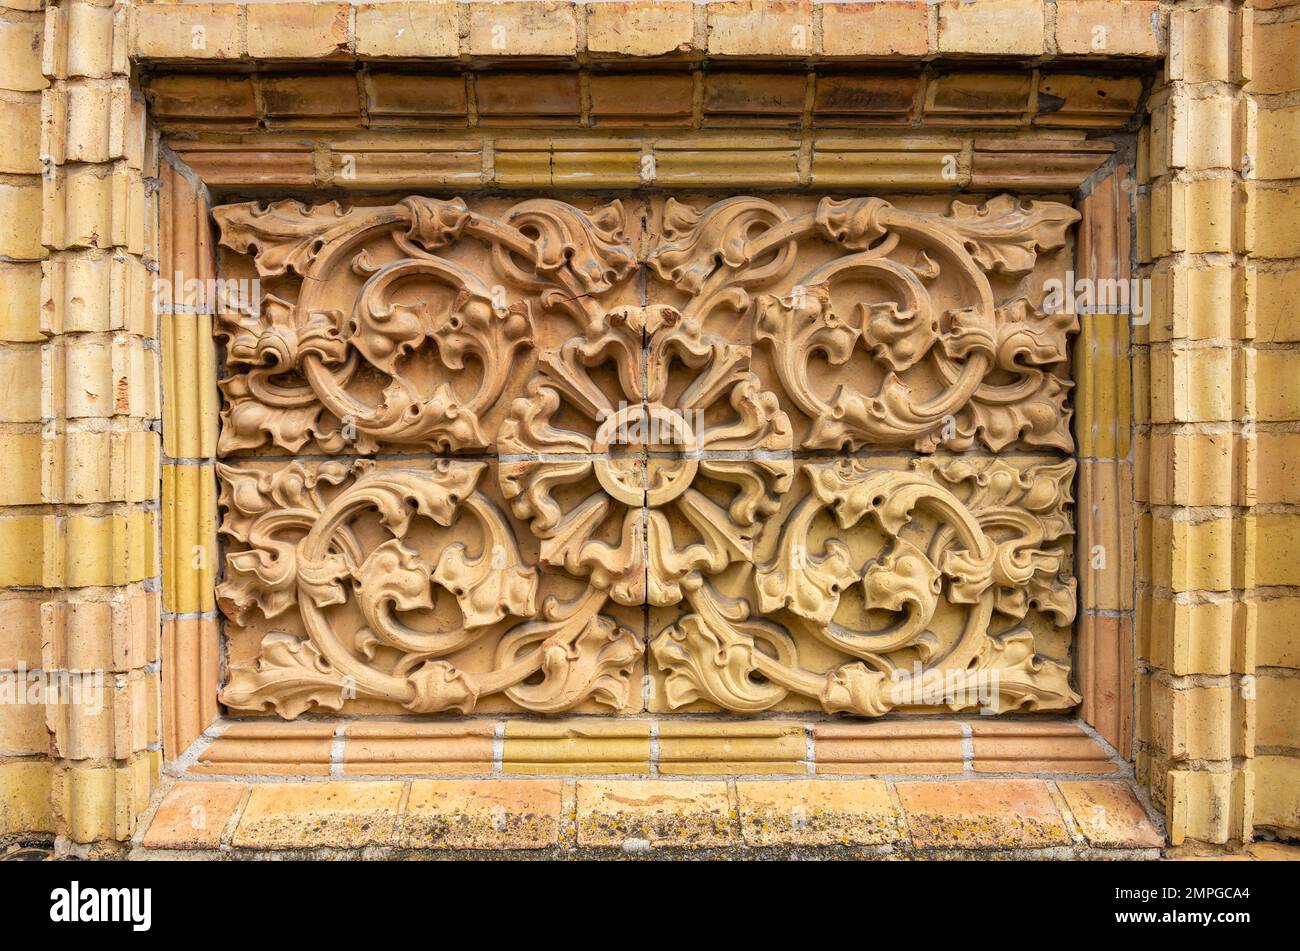 Dettagli architettonici esterni storici con ornamenti a tendine in materiale mattone. Foto Stock